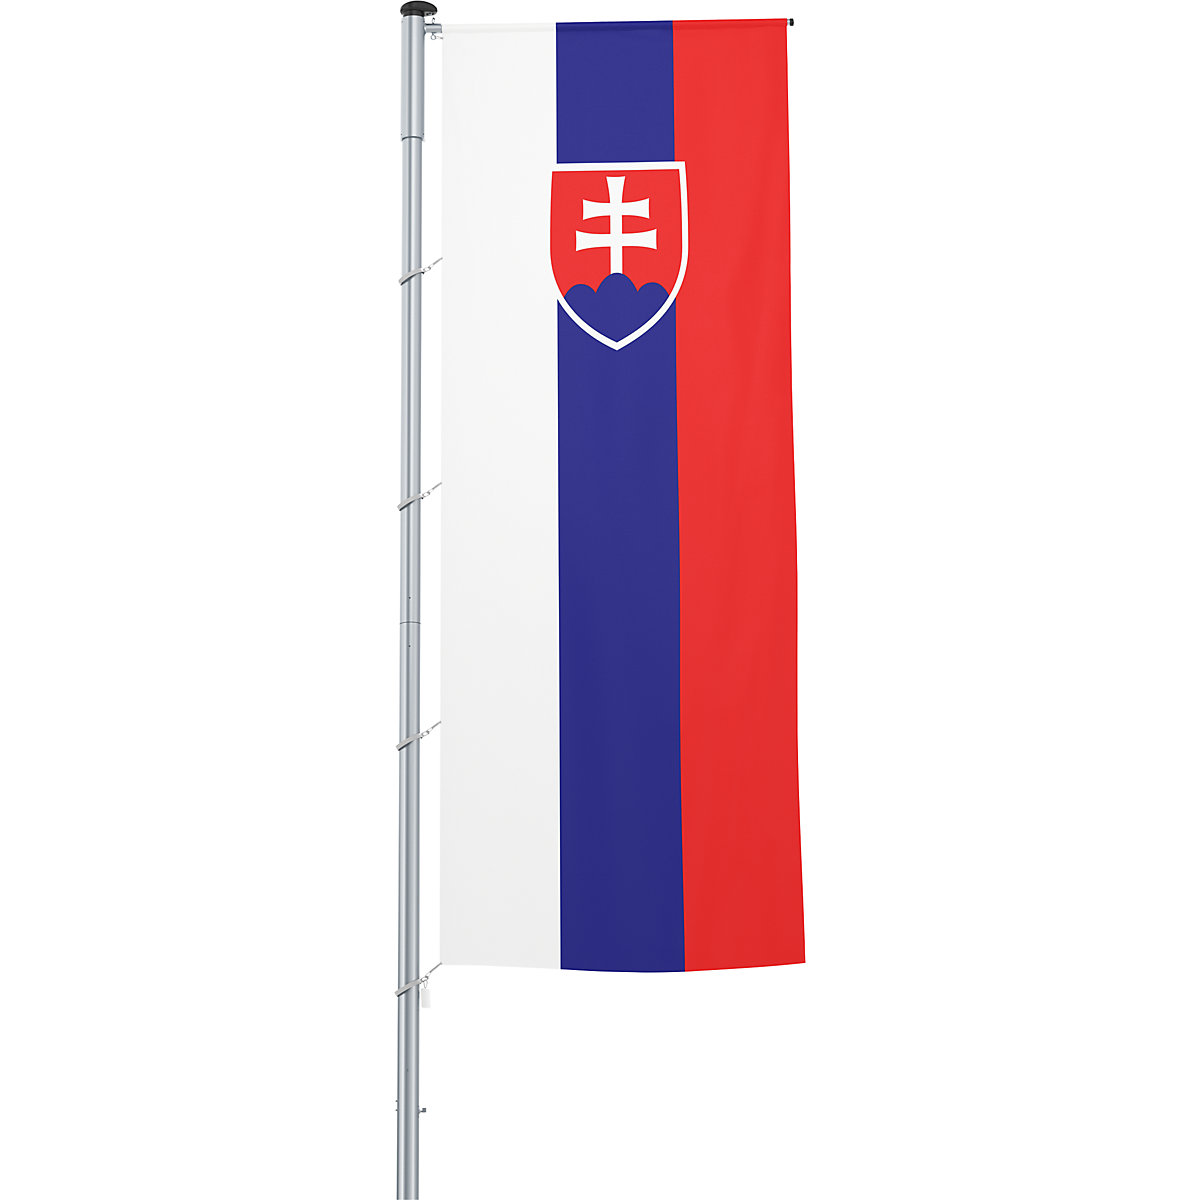 Vlajka na pozdĺžne upevnenie na stožiar/národná vlajka – Mannus, formát 1,2 x 3 m, Slovensko-23